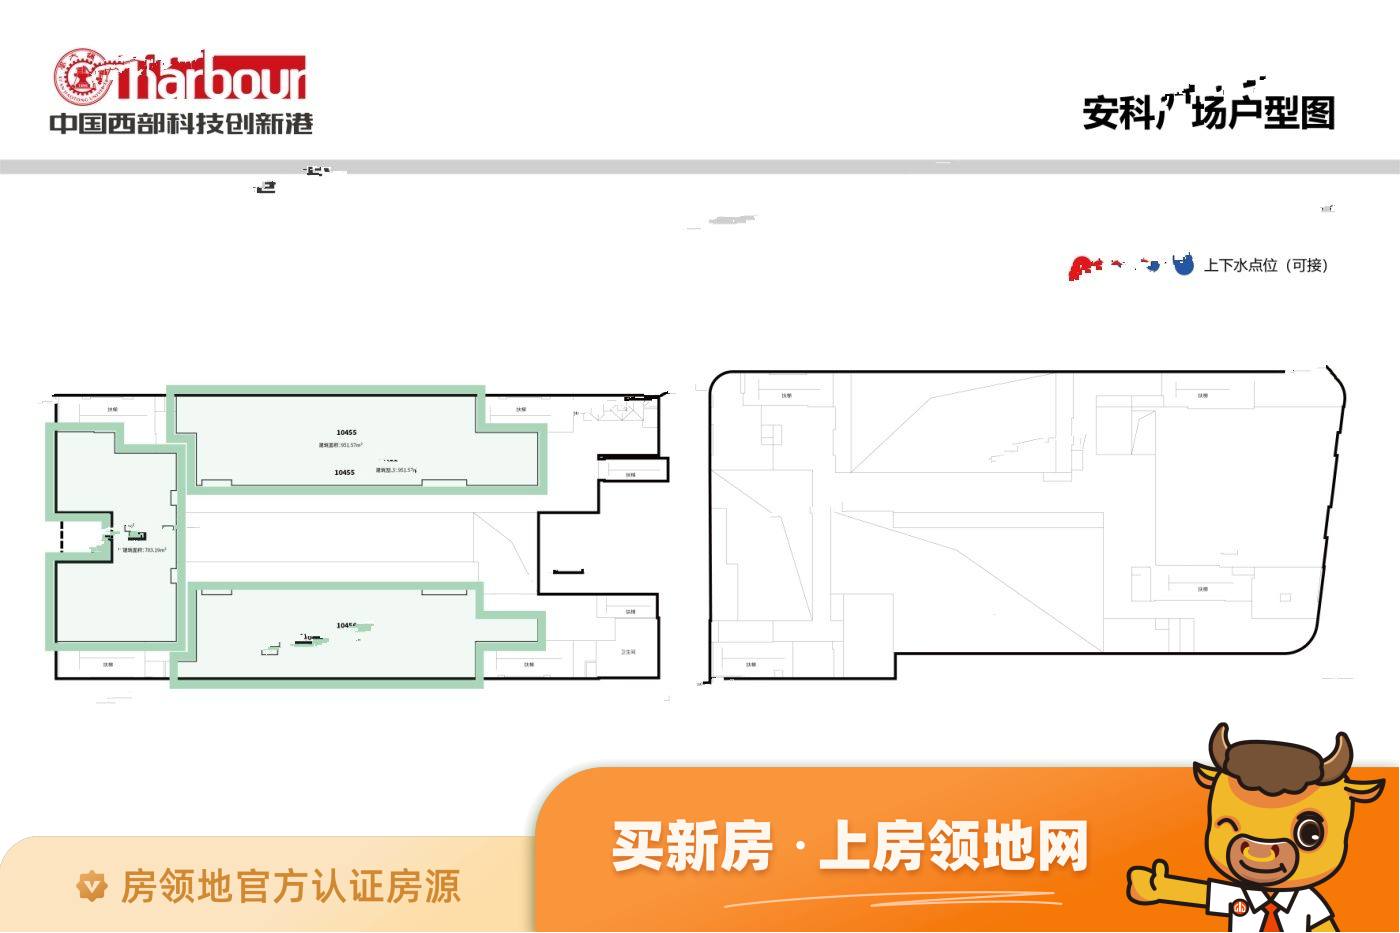 中国西部科技创新港学镇中心Ⅱ期规划图1